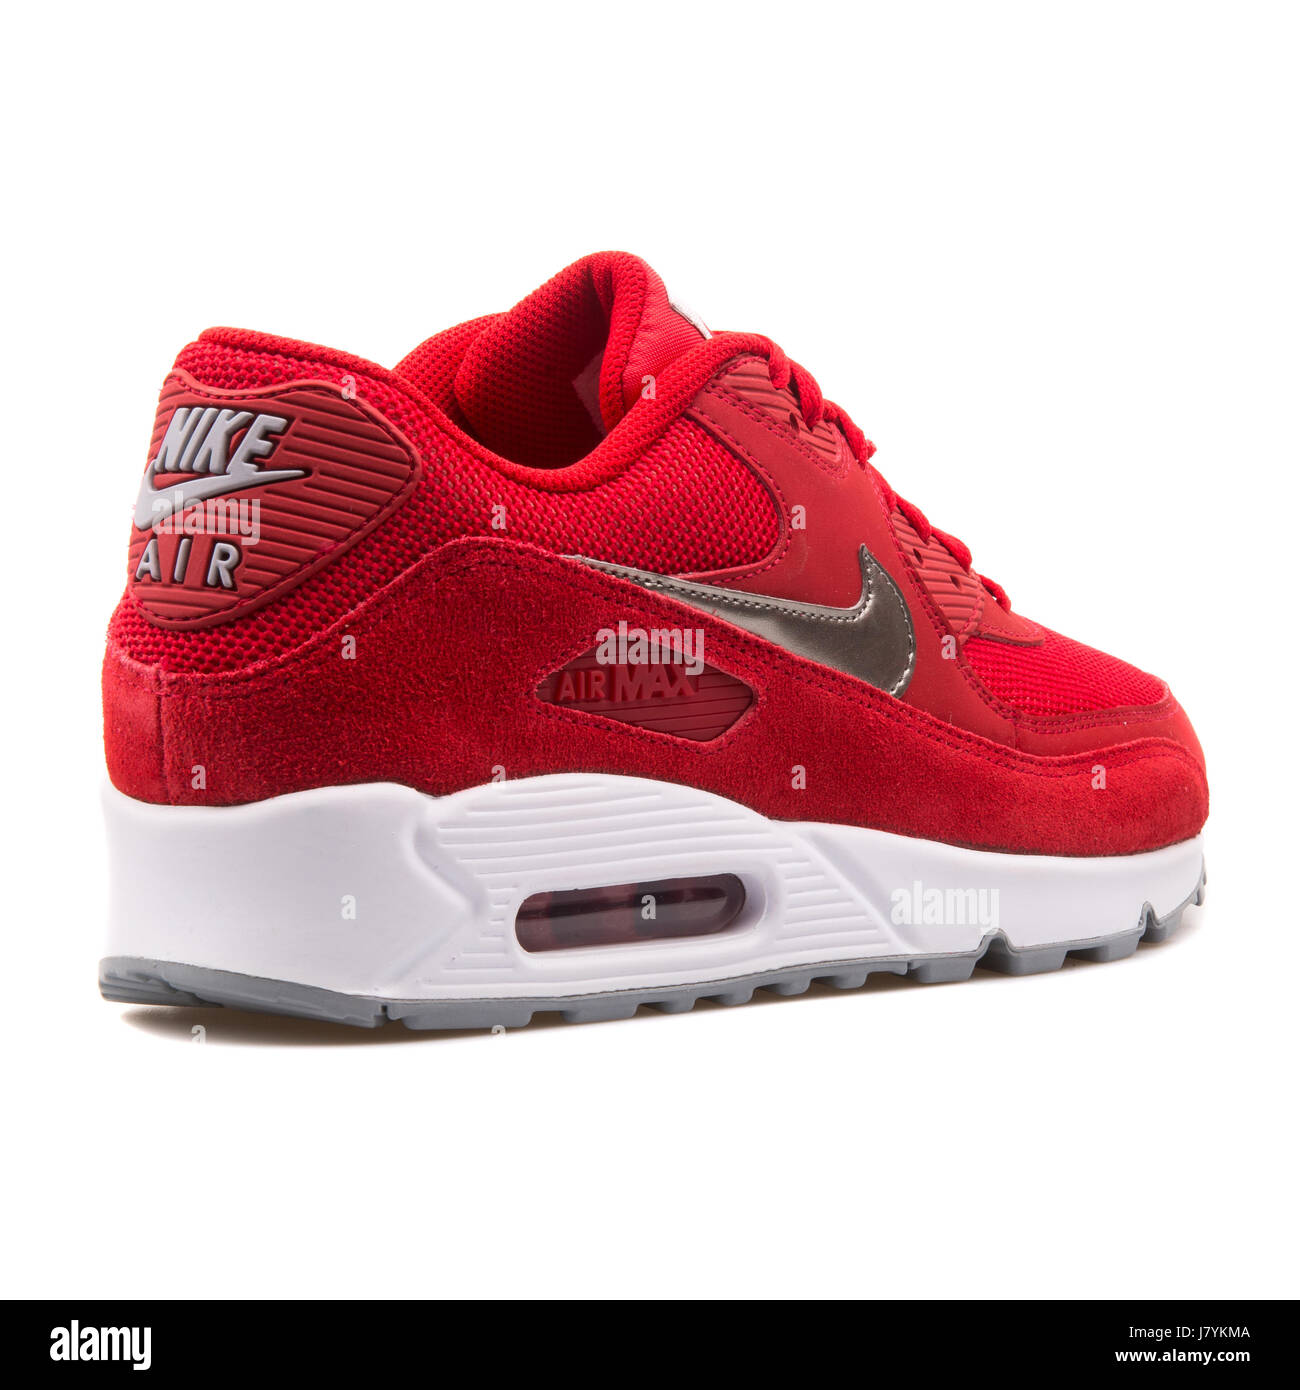 Nike Air Max 90 Men's rojo esencial ejecutando Sneakers - 537384-602  Fotografía de stock - Alamy